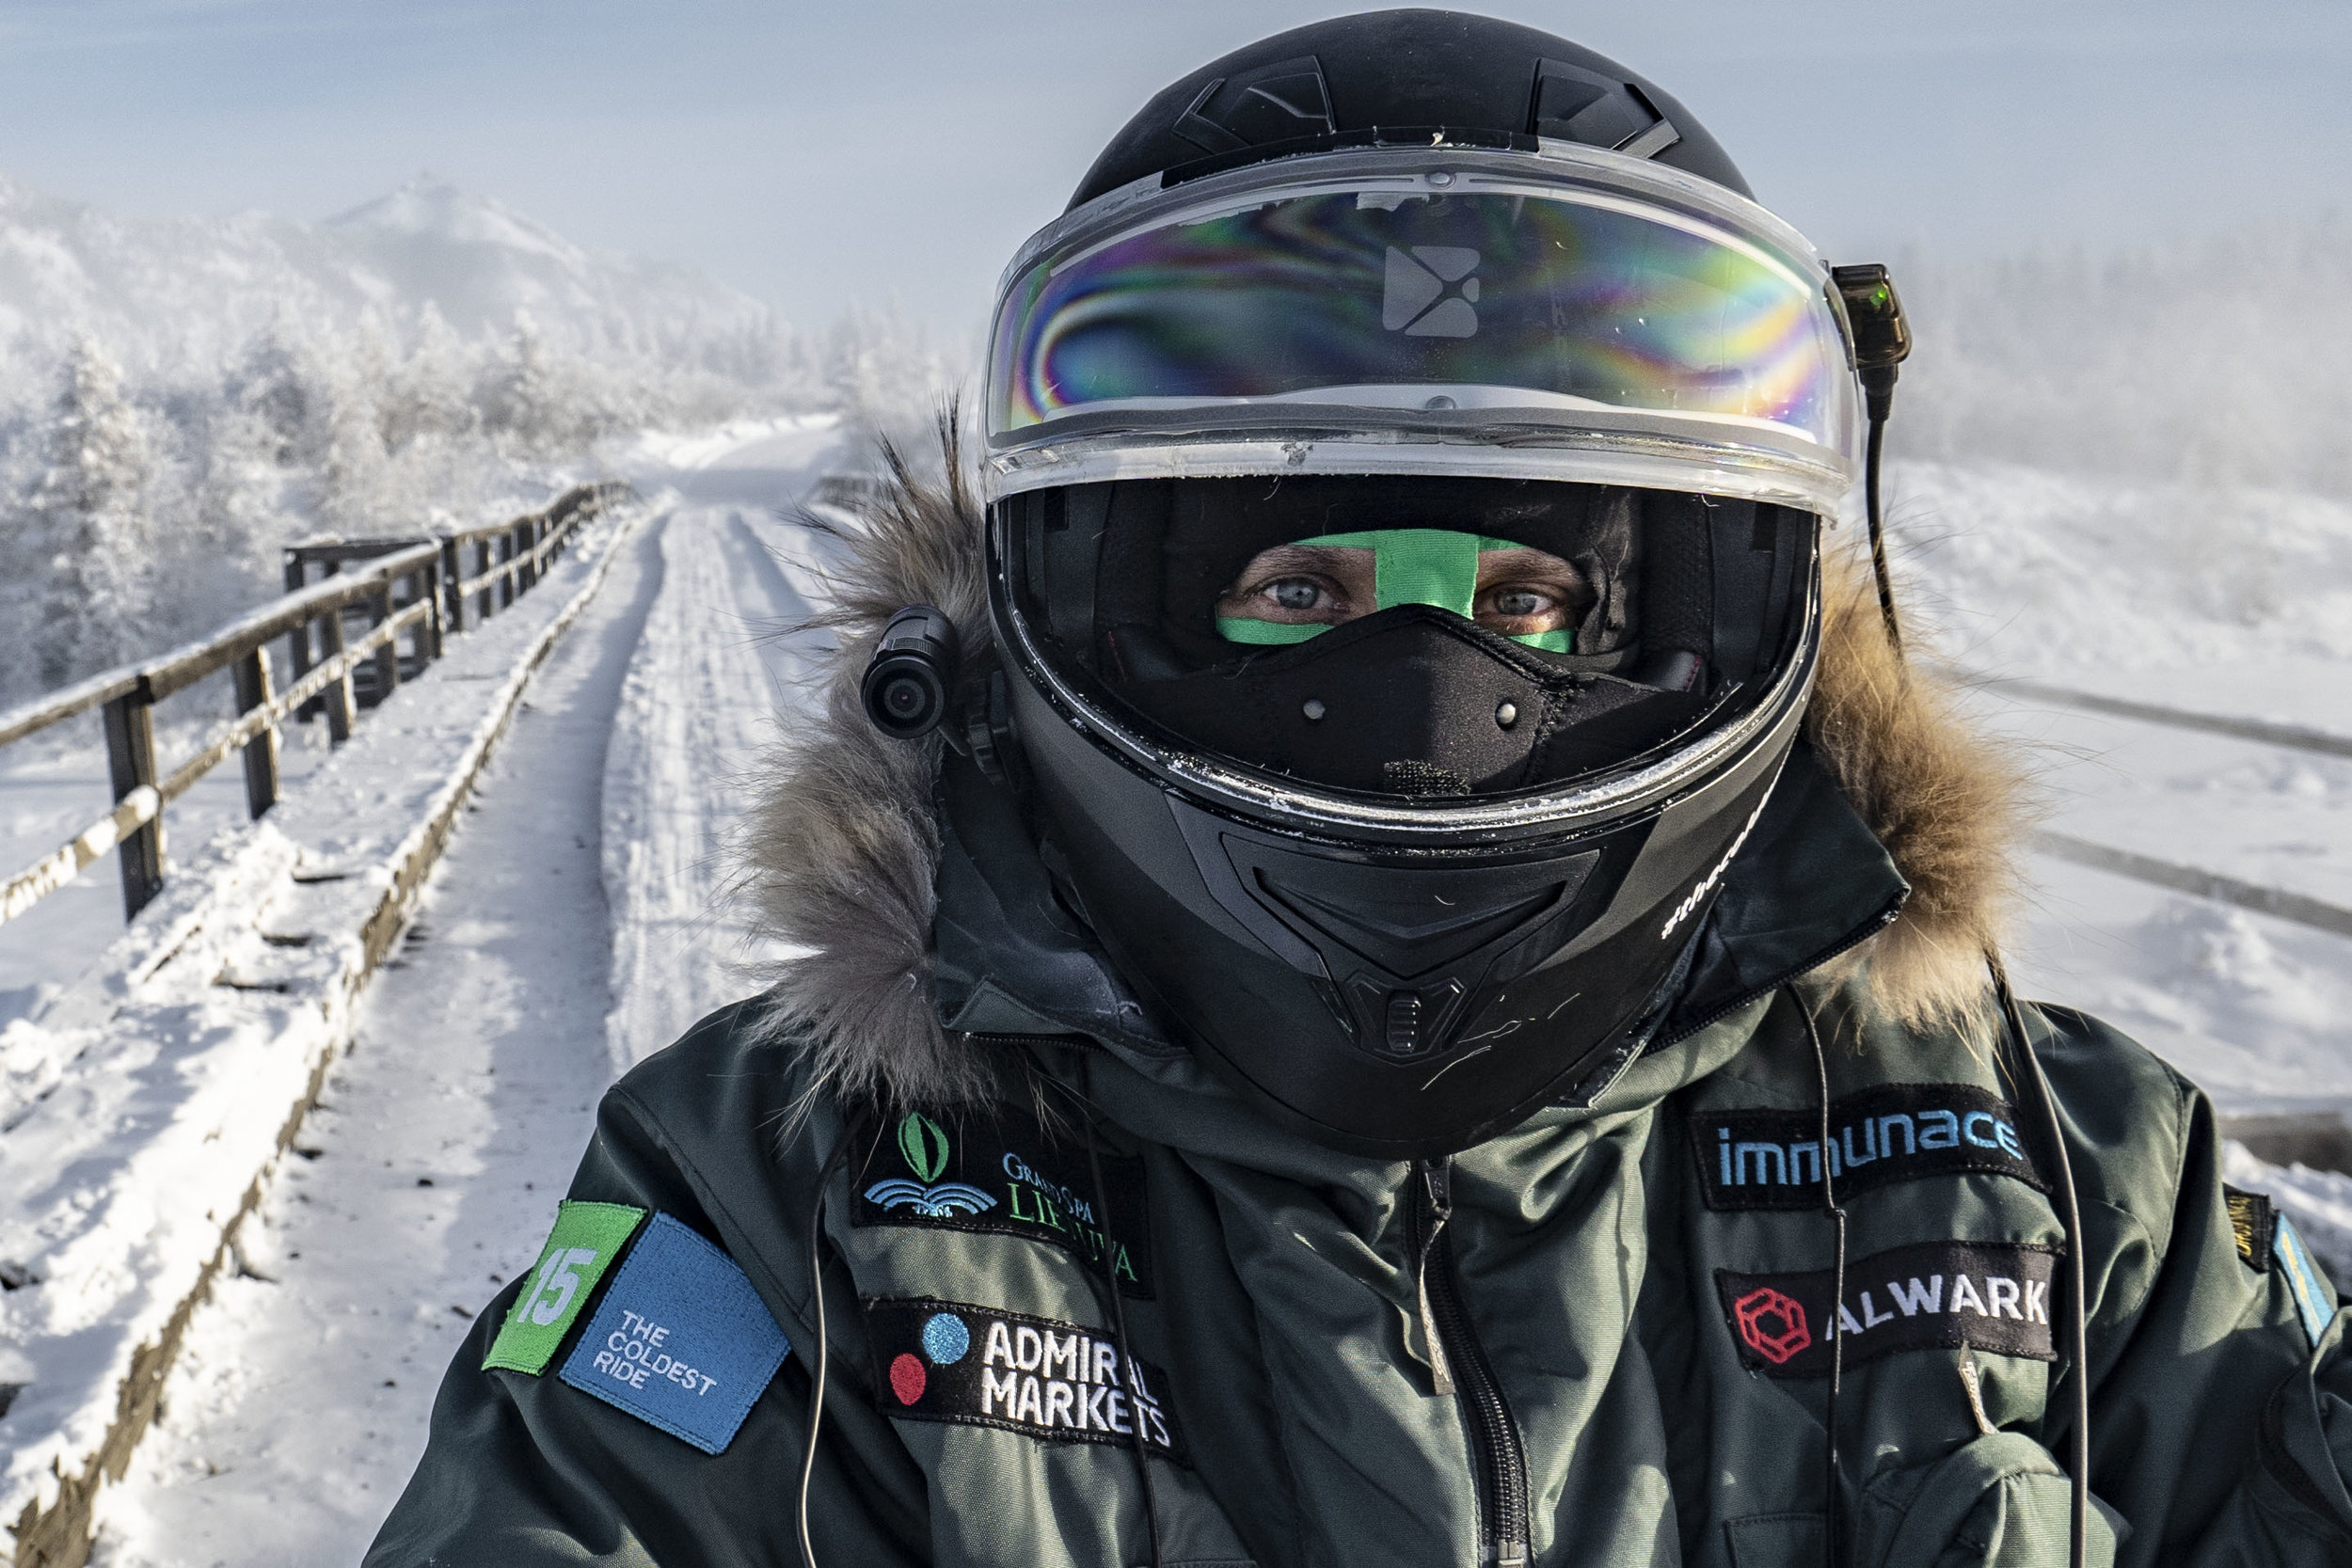 Karolis-Mieliauskas-coldest-ride-adventure-rider-radio-motorcycle-podcast-10.jpg